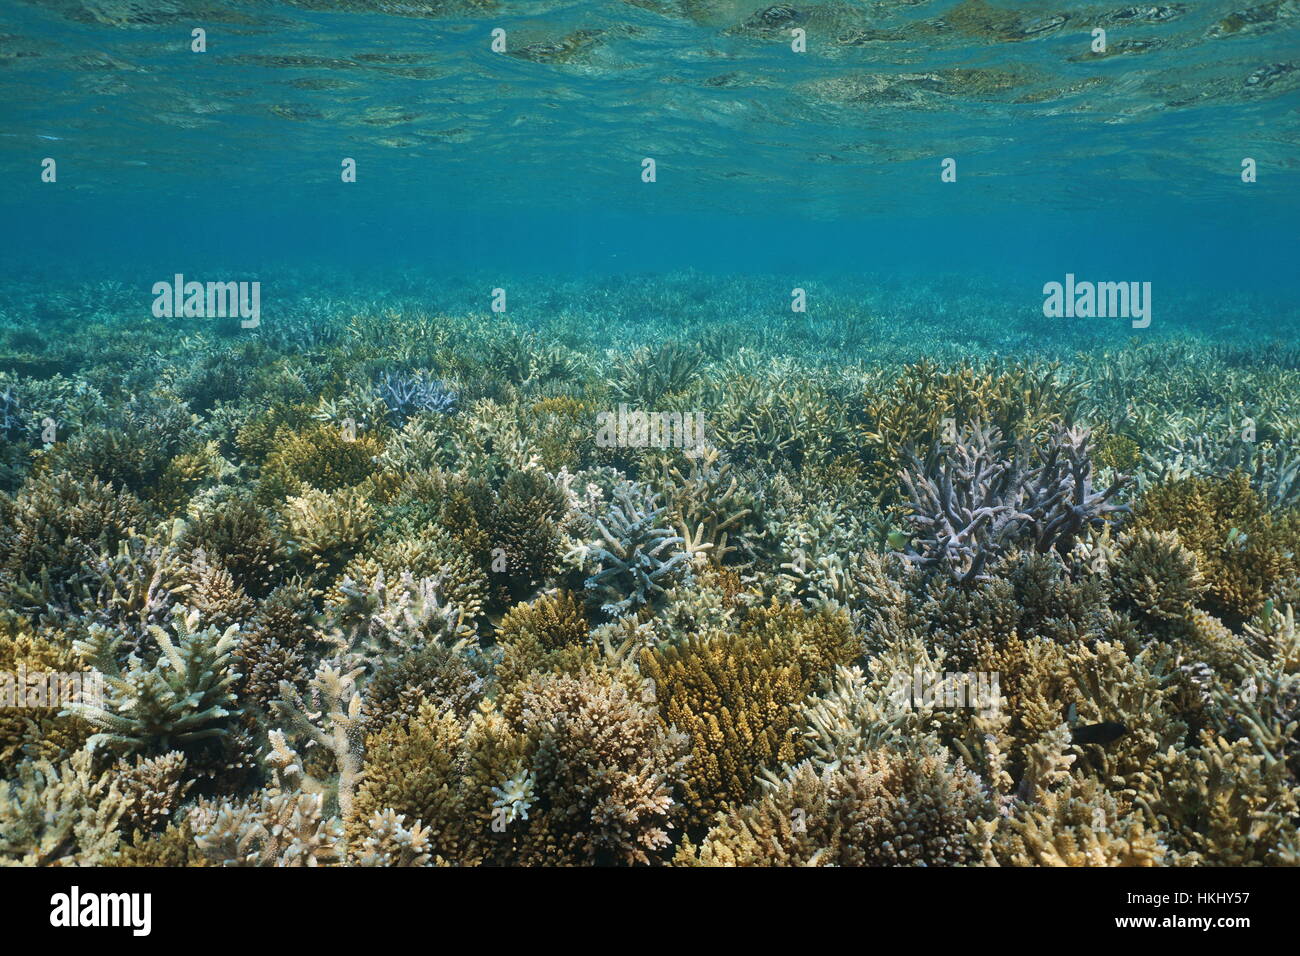 Underwater seascape, fondali bassi coperti da coralli ramificati in buone condizioni, oceano pacifico del sud, Nuova Caledonia Foto Stock